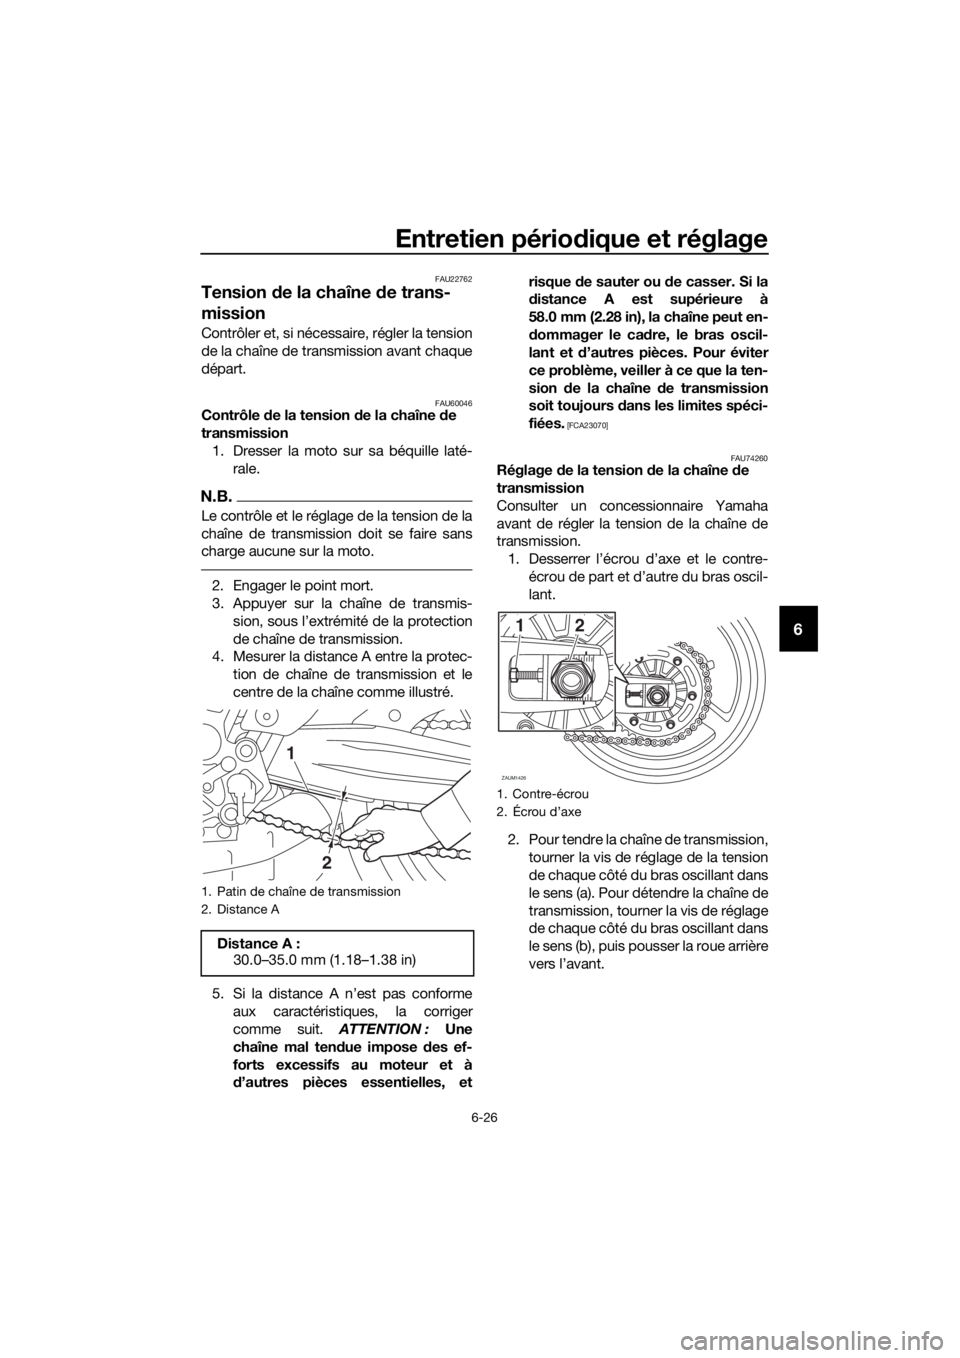 YAMAHA TRACER 700 2017  Notices Demploi (in French) Entretien périodique et réglage
6-26
6
FAU22762
Tension de la chaîne de trans-
mission
Contrôler et, si nécessaire, régler la tension
de la chaîne de transmission avant chaque
départ.
FAU60046